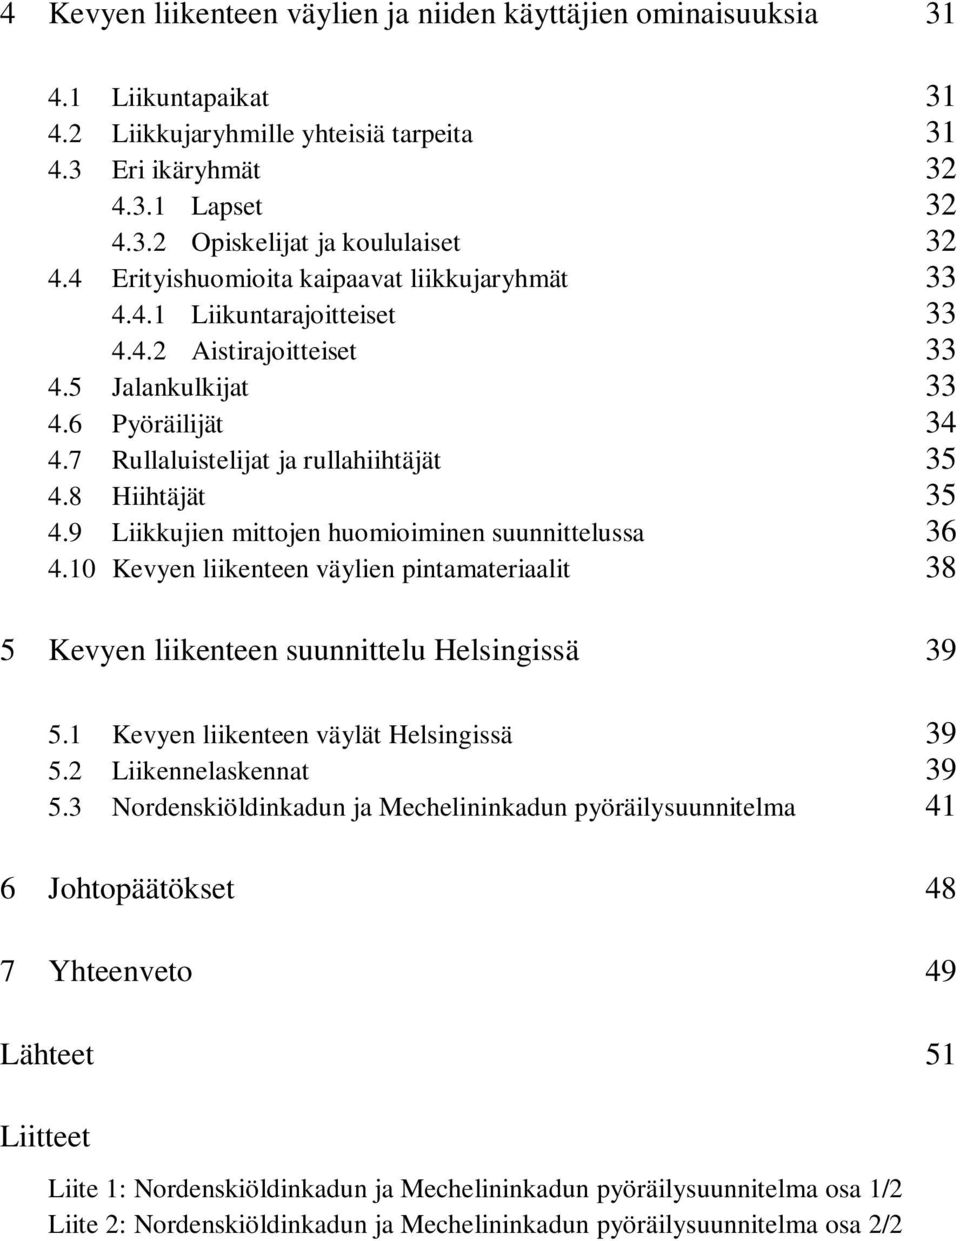 8 Hiihtäjät 35 4.9 Liikkujien mittojen huomioiminen suunnittelussa 36 4.10 Kevyen liikenteen väylien pintamateriaalit 38 5 Kevyen liikenteen suunnittelu Helsingissä 39 5.